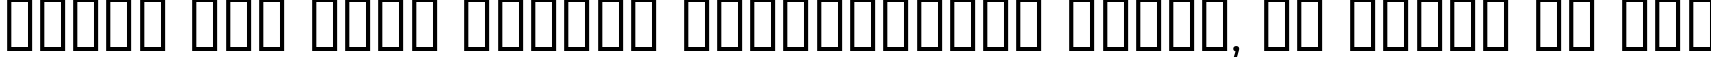 Пример написания шрифтом Aquaduct    Plain текста на русском